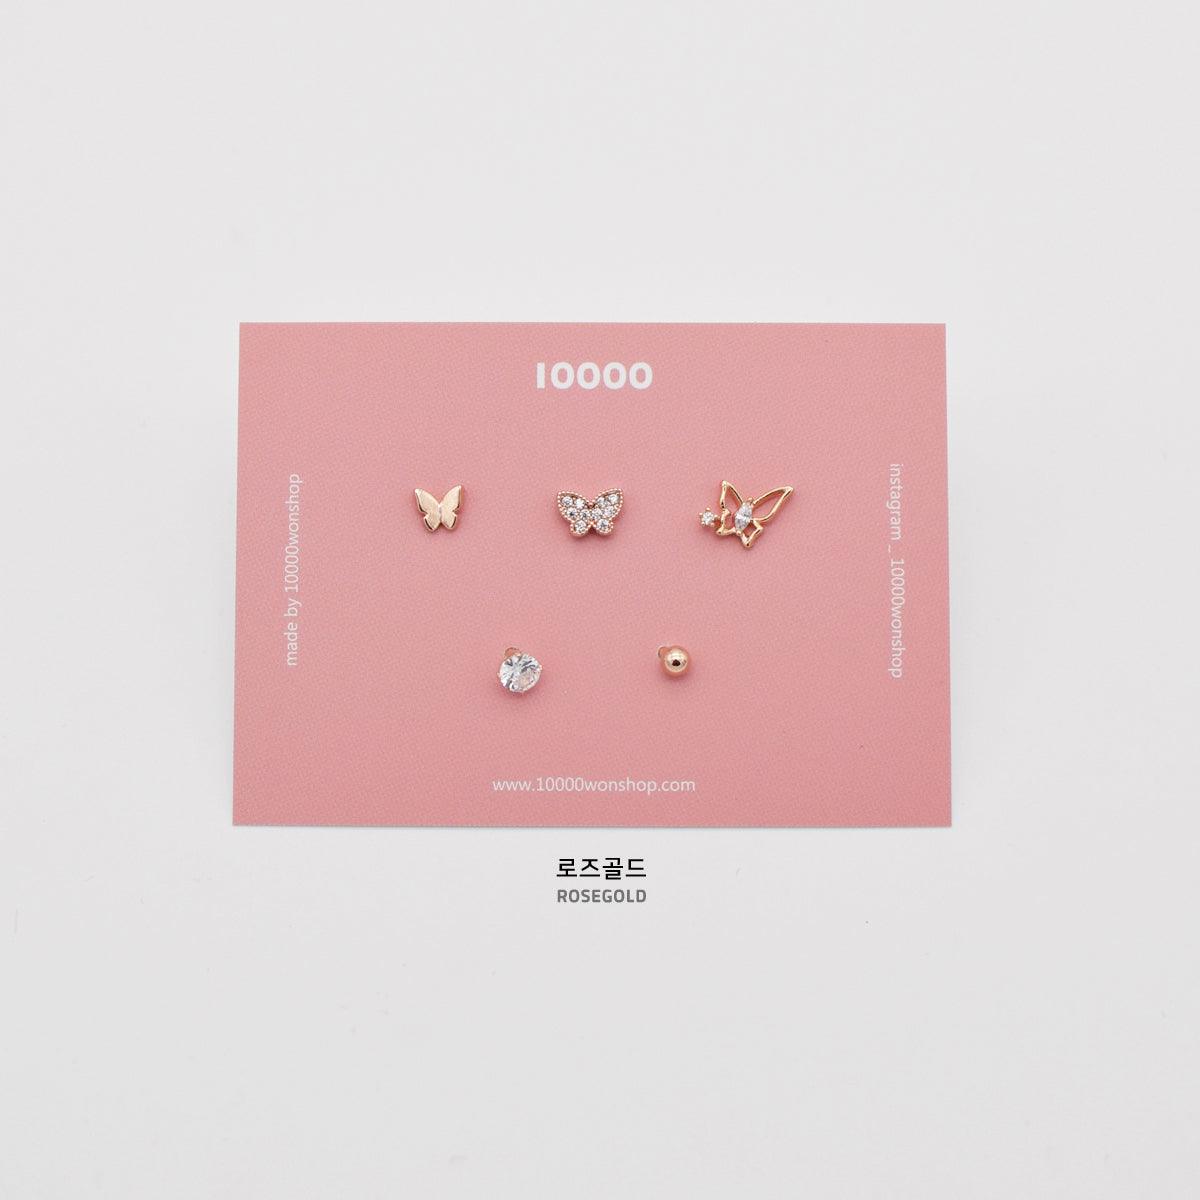 キュービック蝶々ピアッシング[5セット] Piercing 10000won 